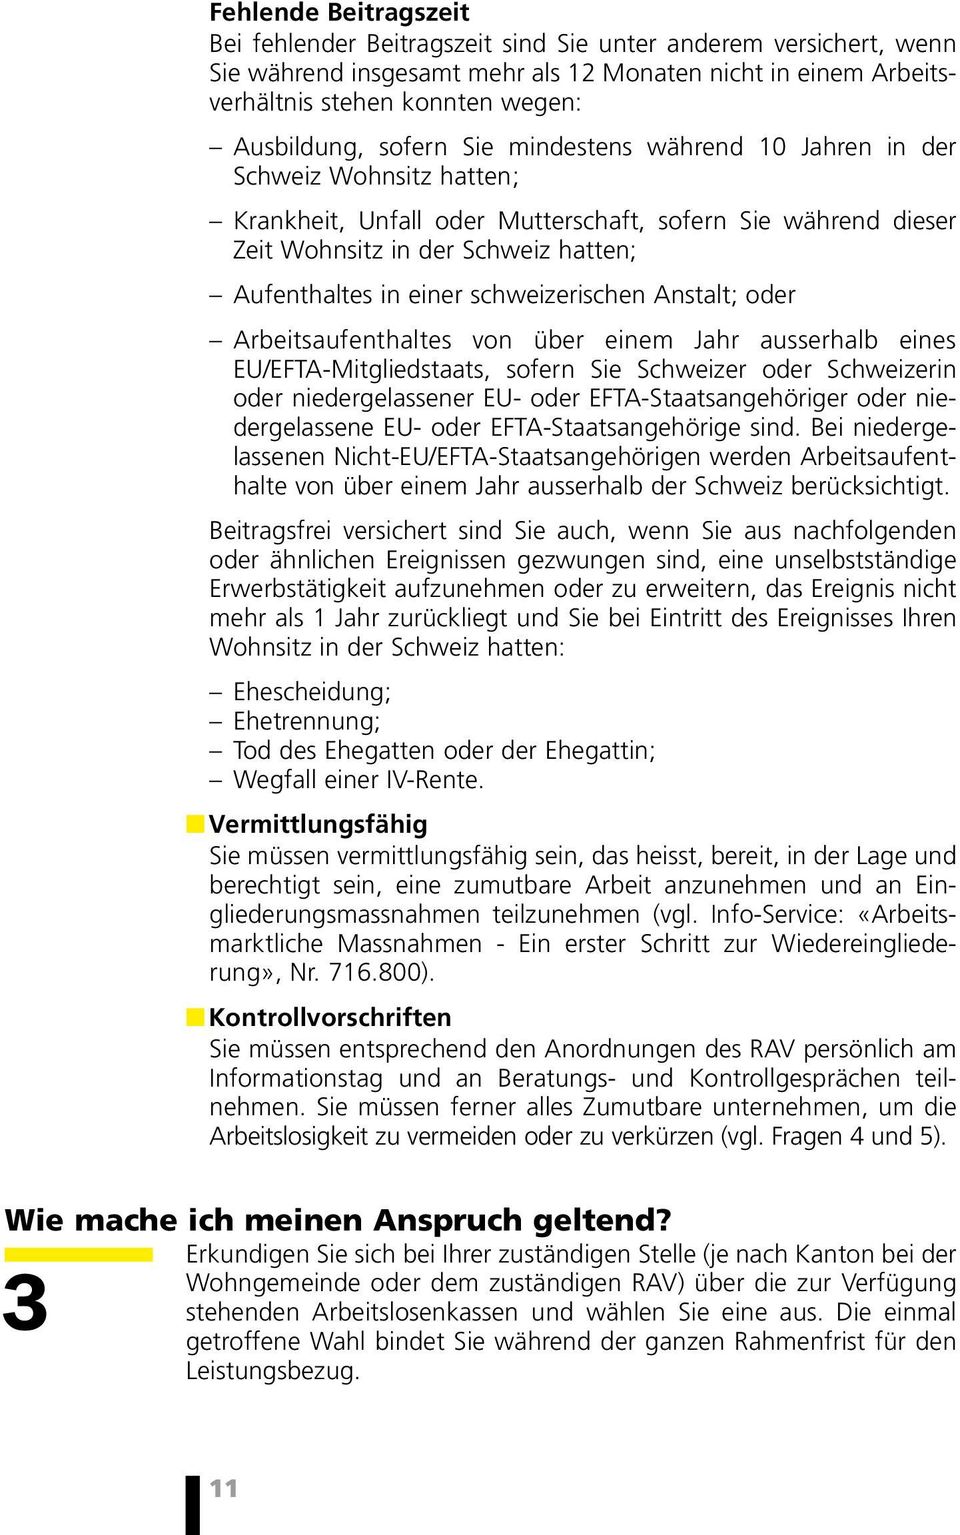 schweizerischen Anstalt; oder Arbeitsaufenthaltes von über einem Jahr ausserhalb eines EU/EFTA-Mitgliedstaats, sofern Sie Schweizer oder Schweizerin oder niedergelassener EU- oder